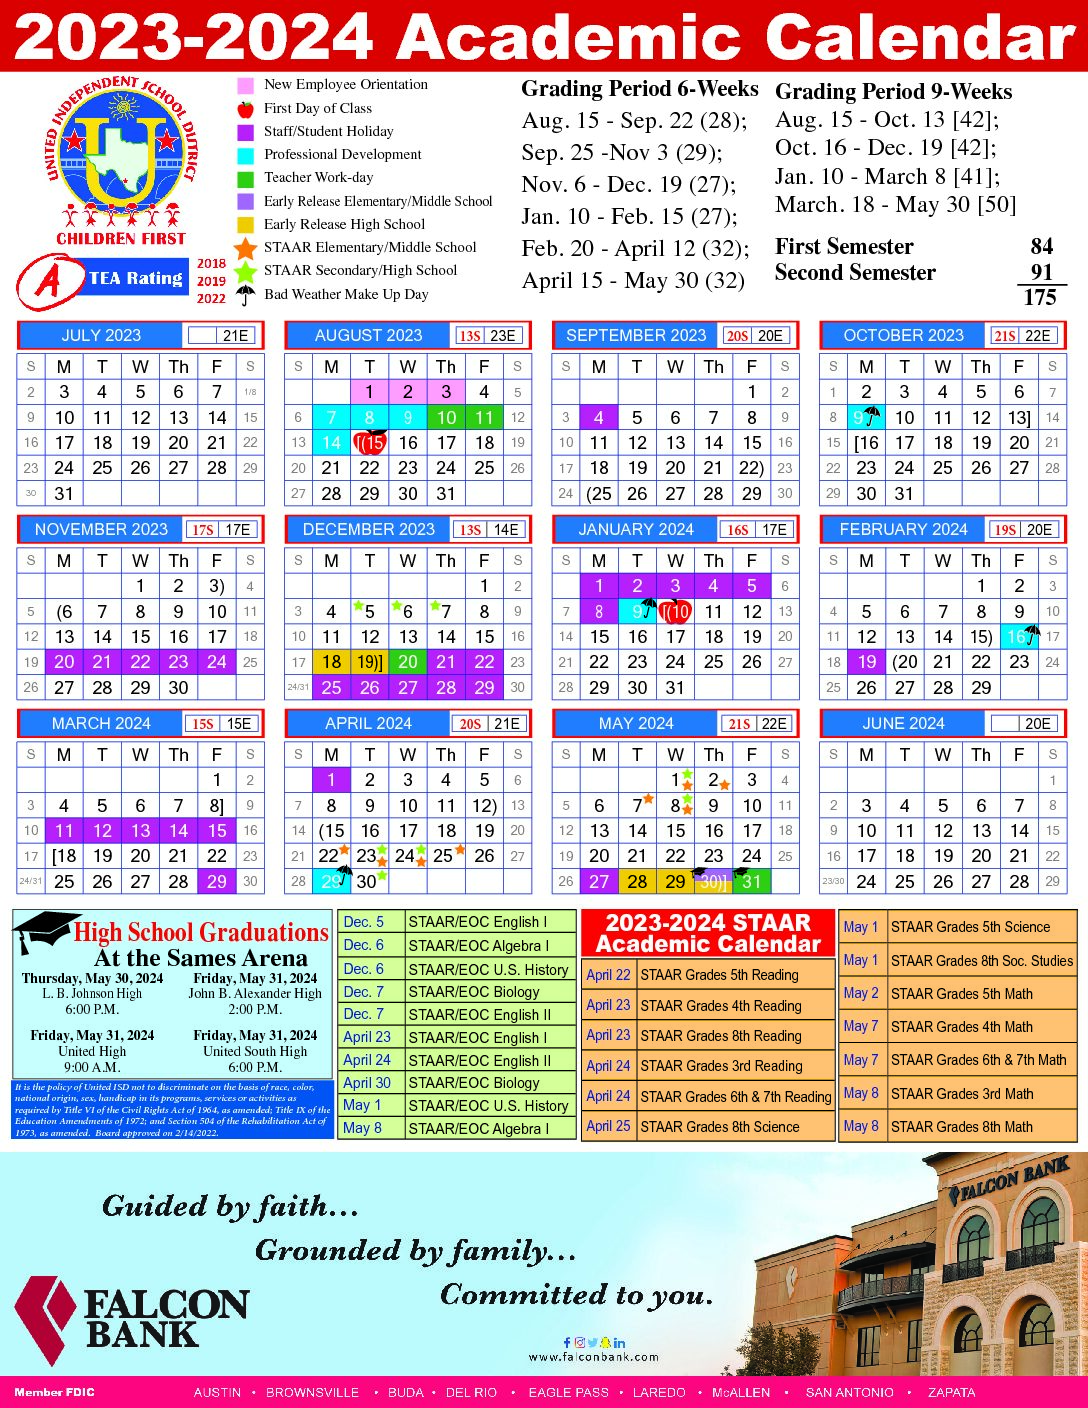 Uisd Calendar 2024 Barry Carmela